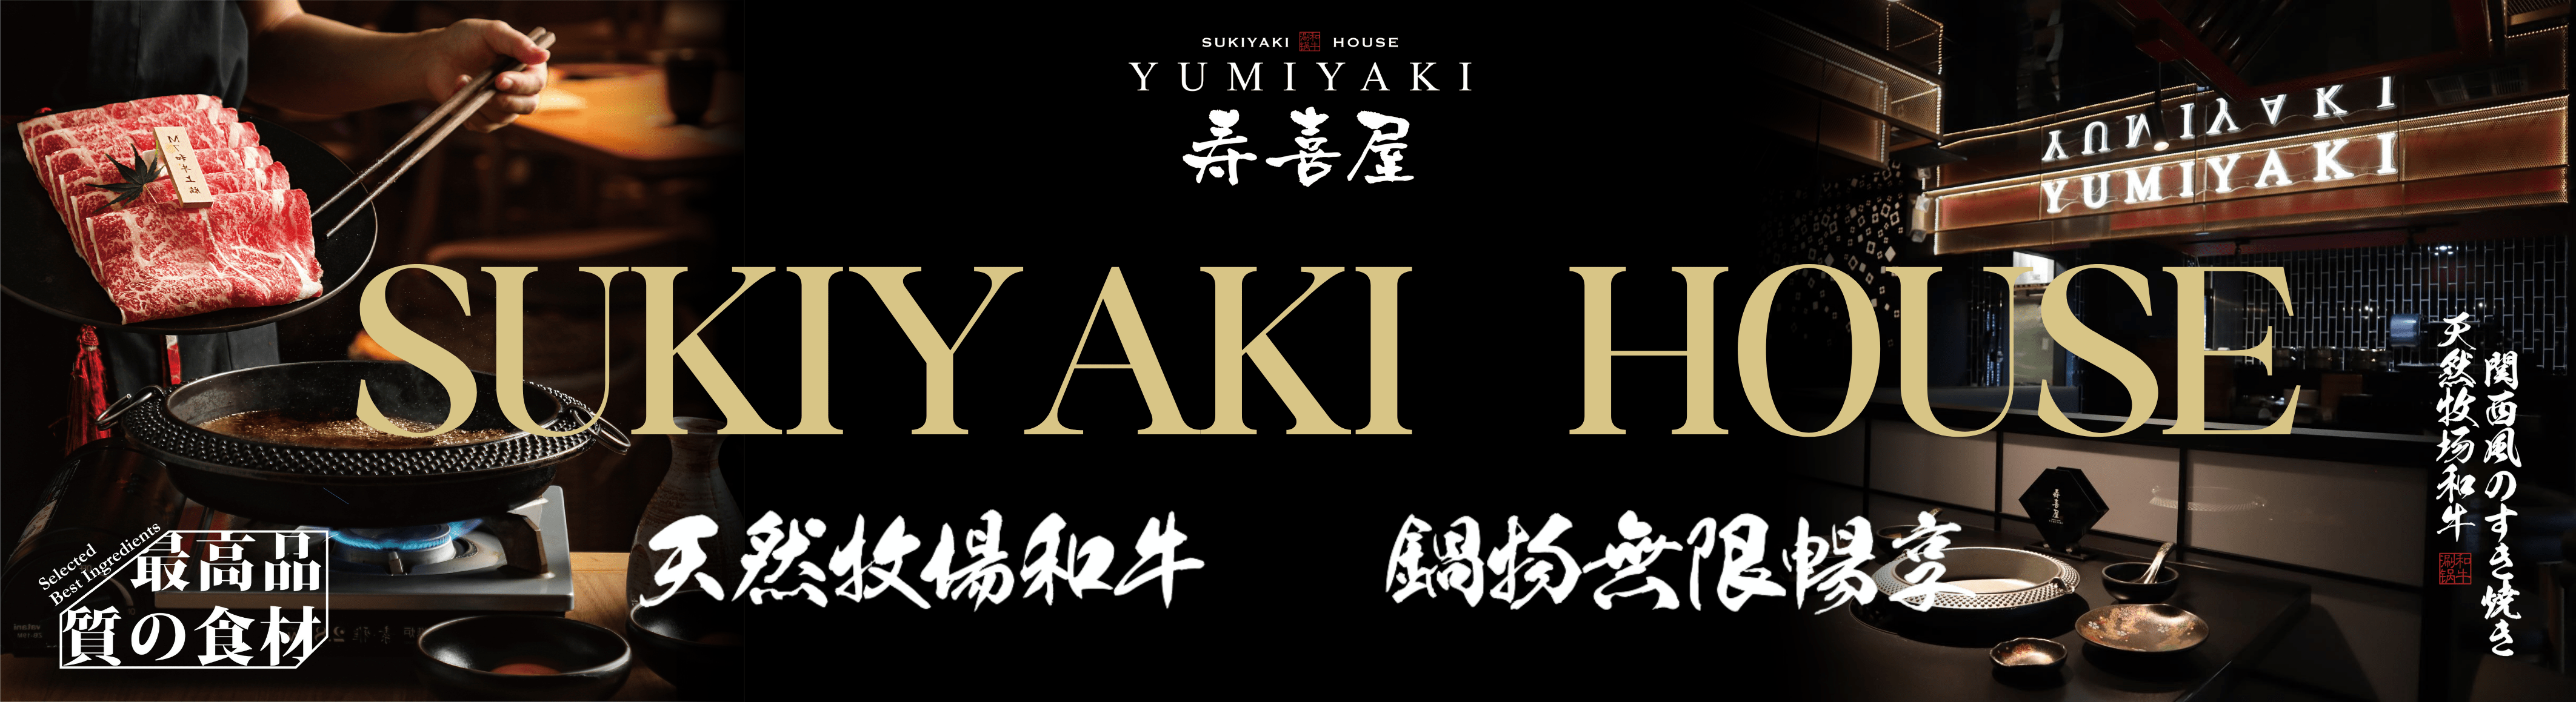 Yumiyaki | About Us